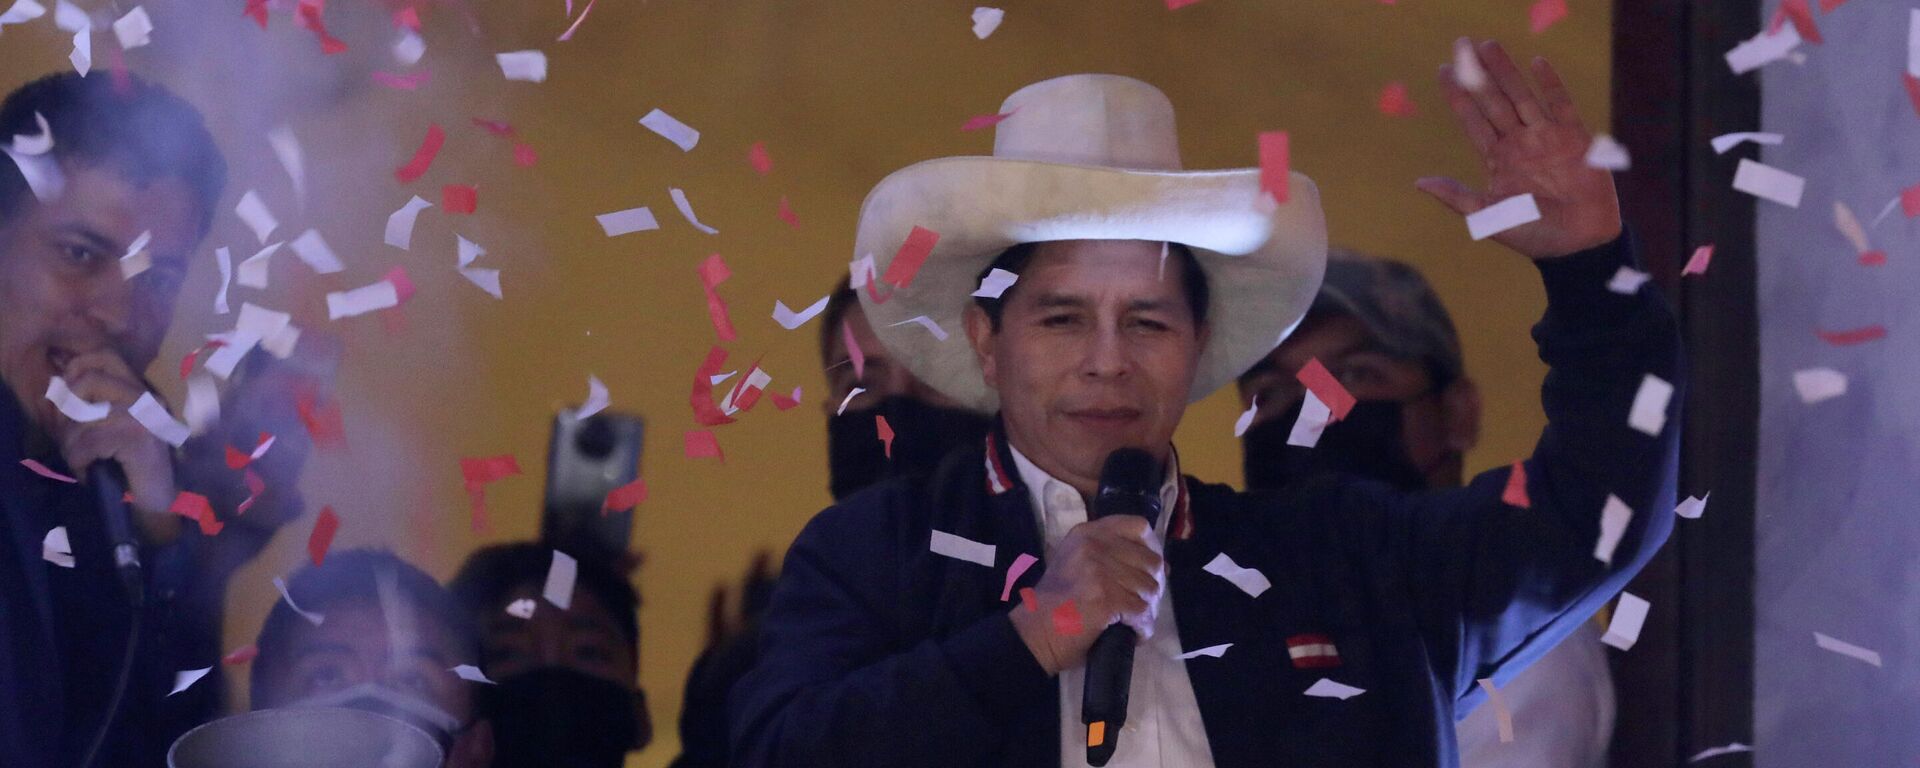 El presidente electo de Perú, Pedro Castillo, celebra su triunfo electoral - Sputnik Mundo, 1920, 05.10.2021